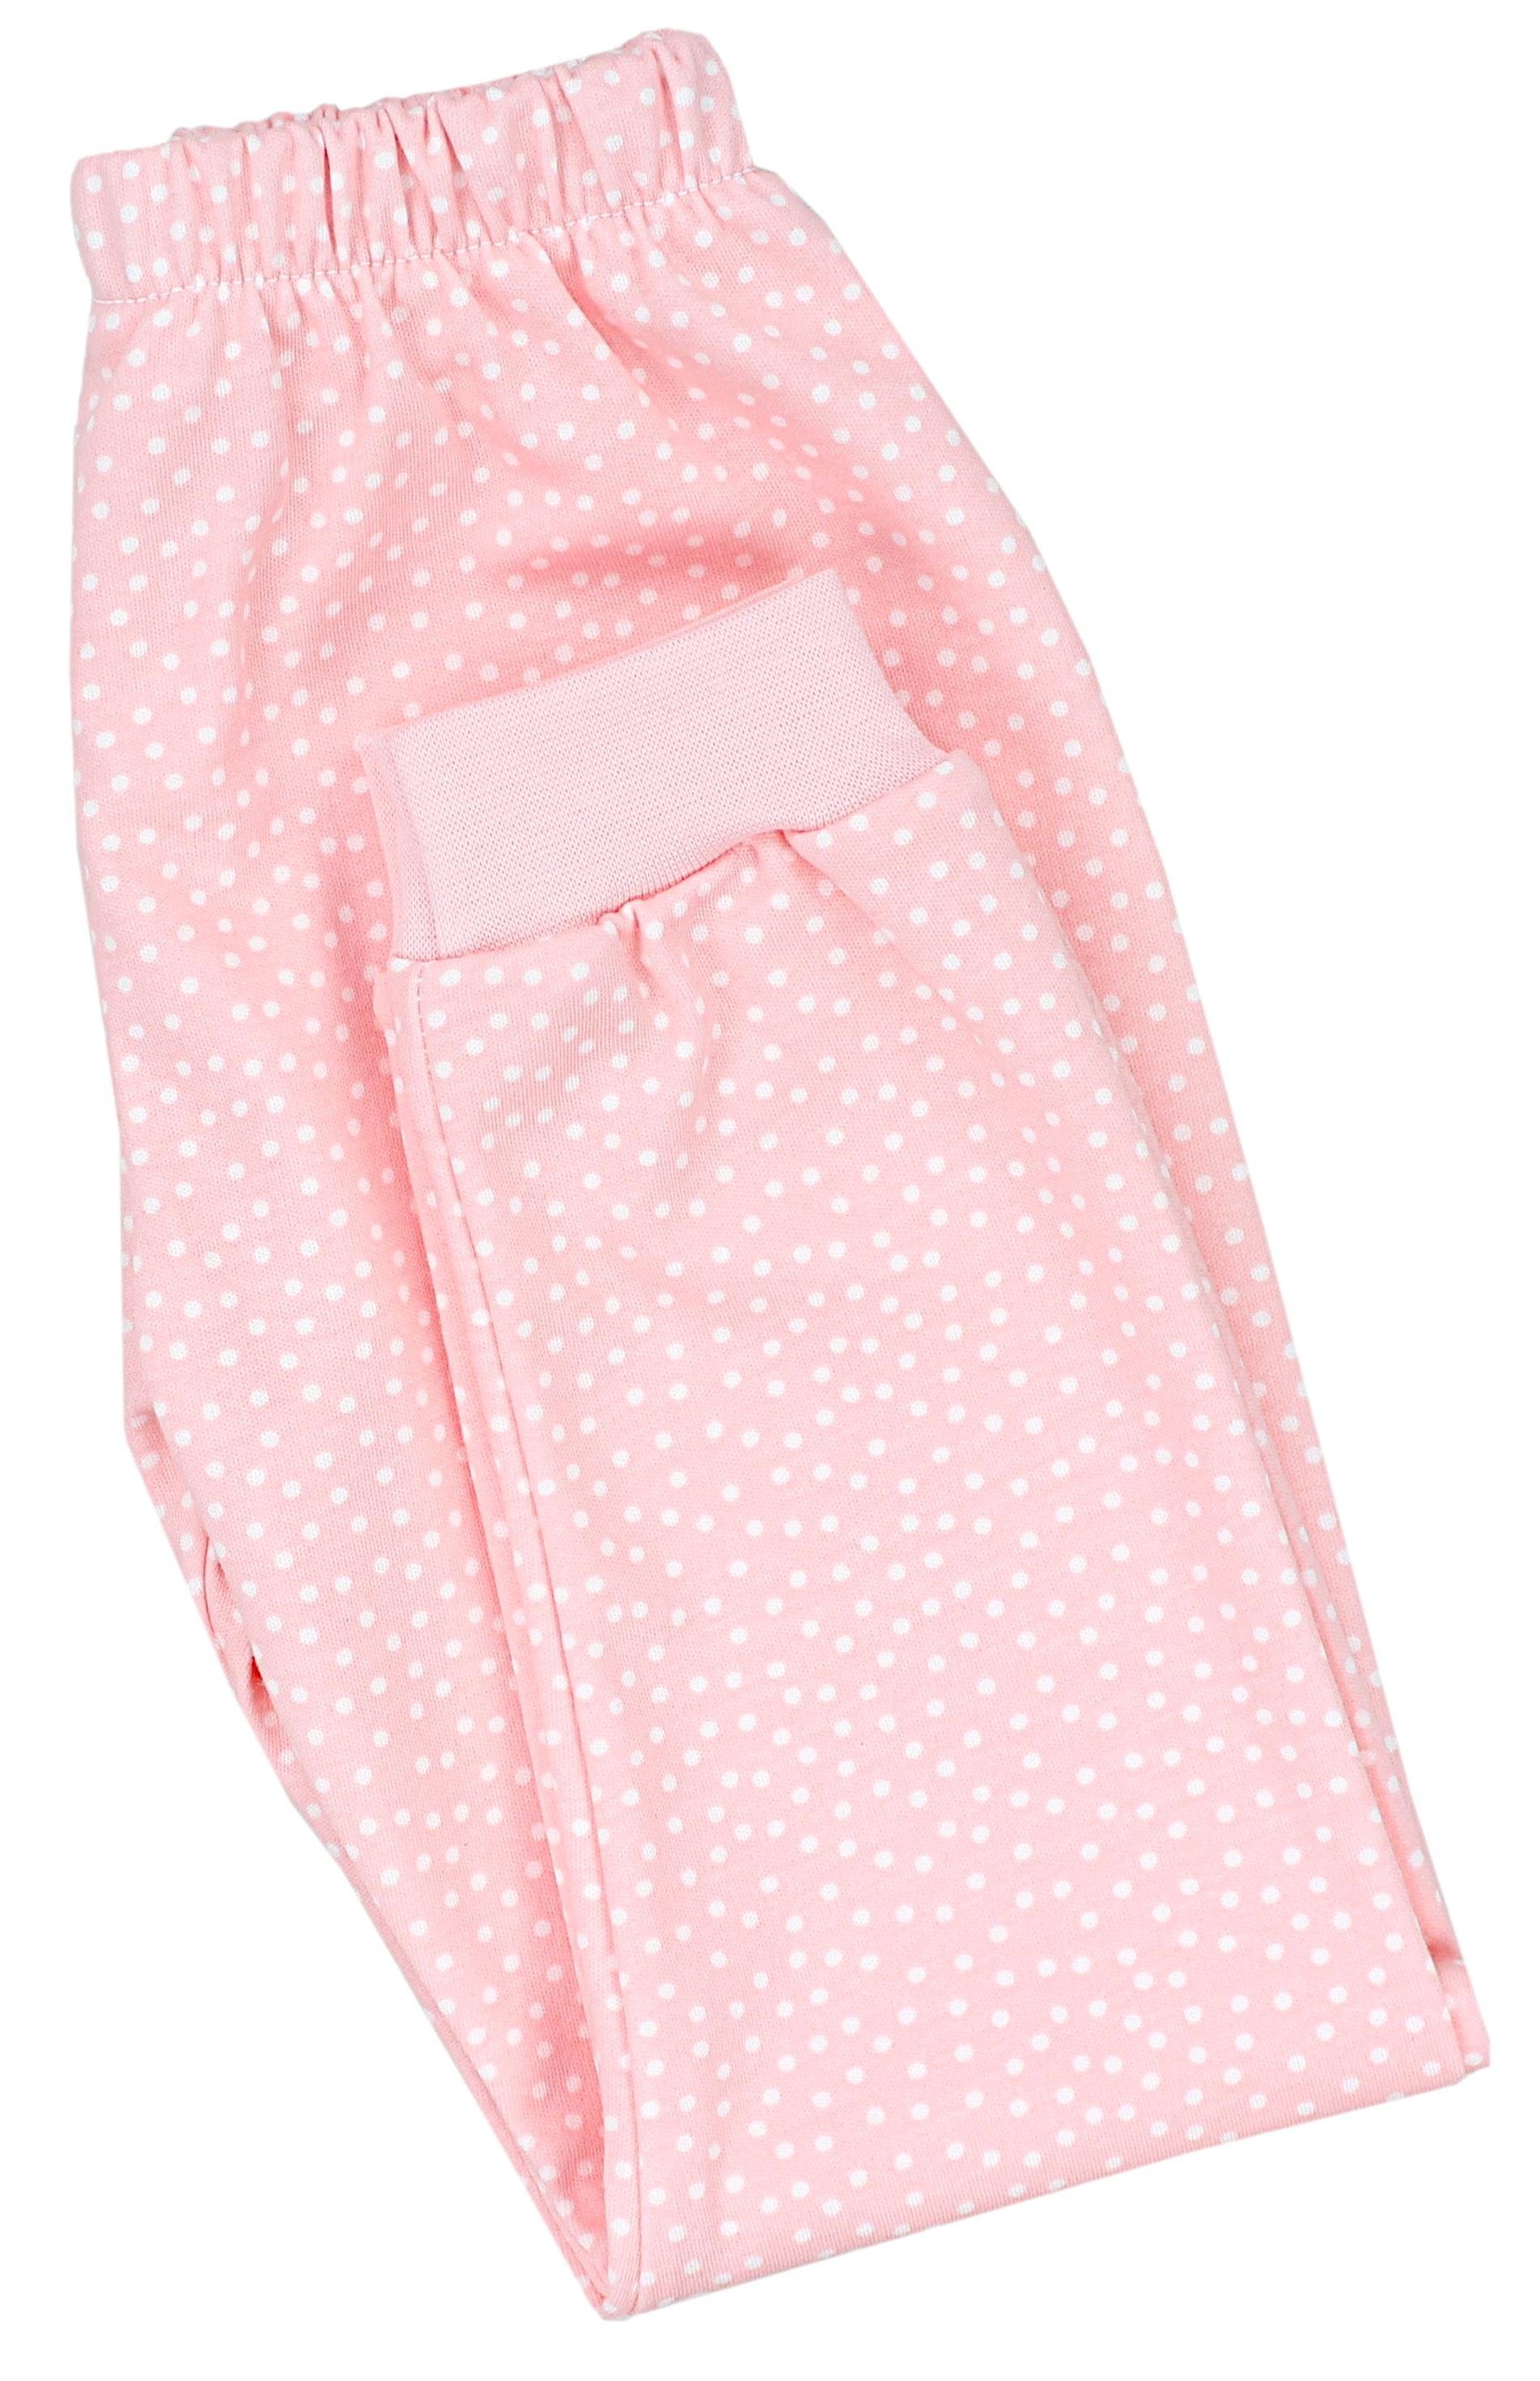 TupTam Schlafanzug Nachtwäsche Aprikose Schlafanzug Set / Mädchen Kinder GIRL Tupfen Langarm COOL Pyjama 2-teilig